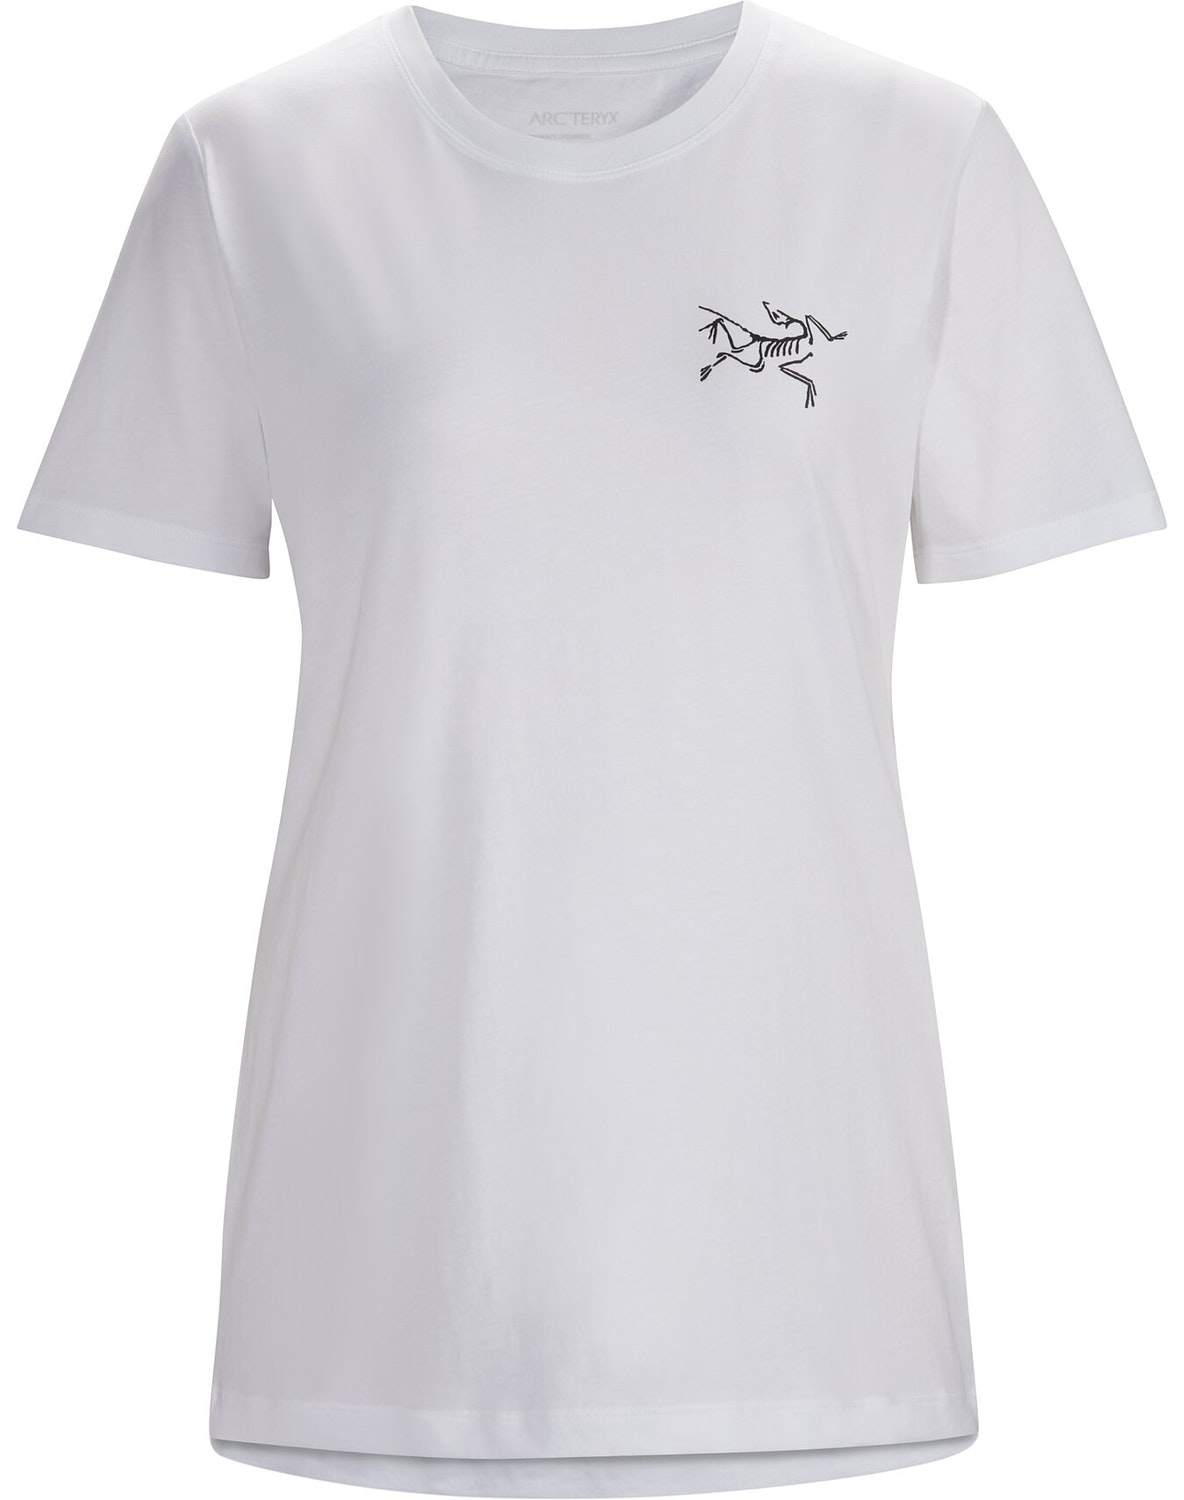 T-shirt Arc'teryx Bird Emblem Donna Bianche - IT-671437